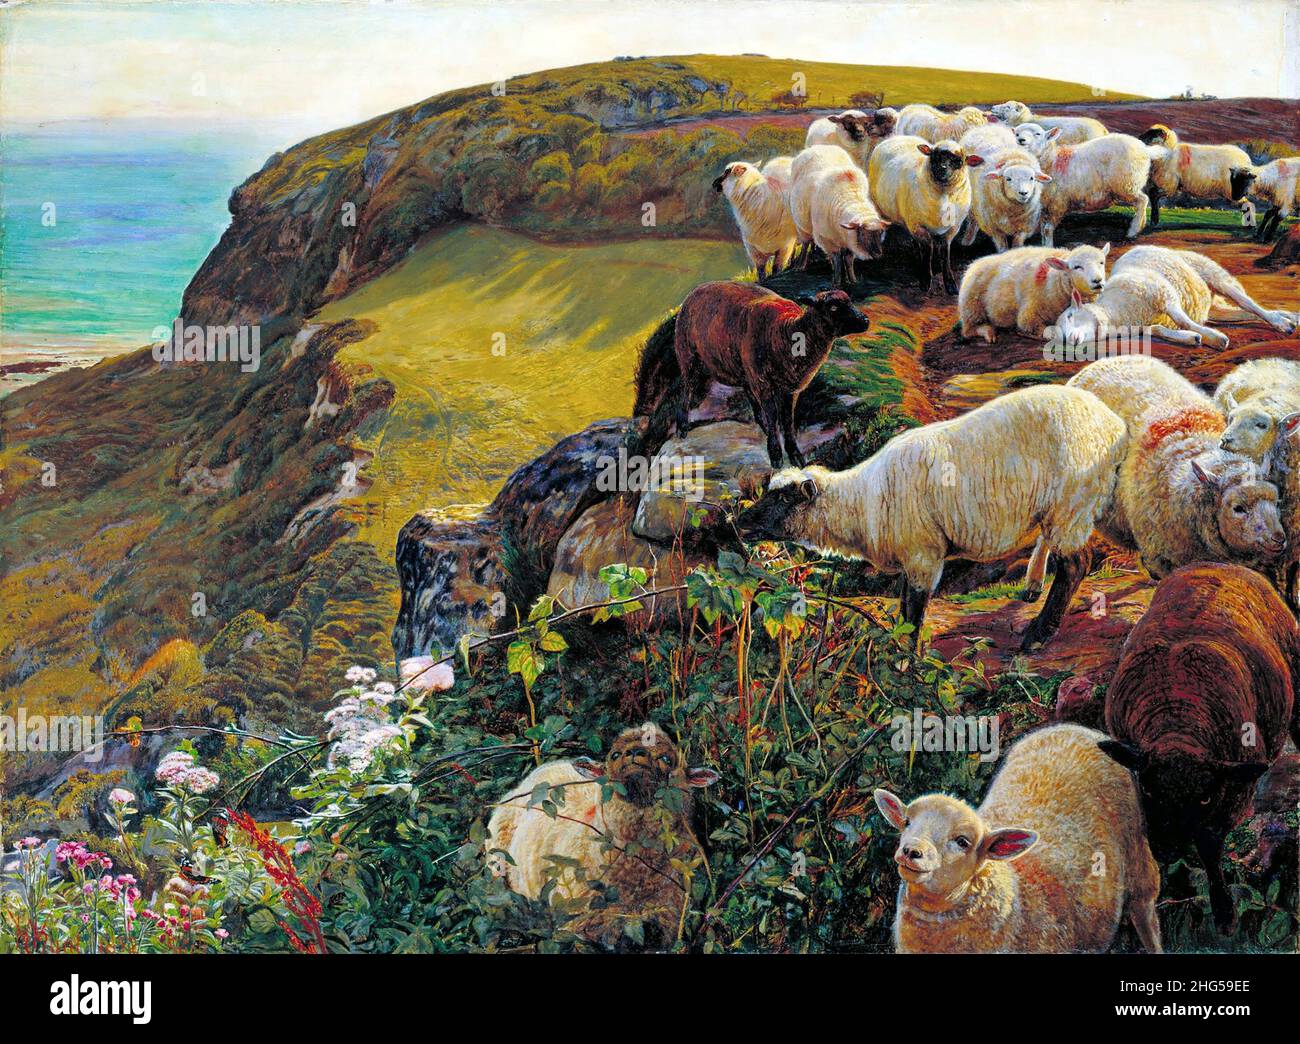 Our English Coasts, 1852 (`Strayed Sheep') von William Holman Hunt (1827-1910), Öl auf Leinwand, 1852. Holman Hunt war eine führende Figur in der Pre-Raphaelite-Bewegung des 19th. Jahrhunderts. Stockfoto